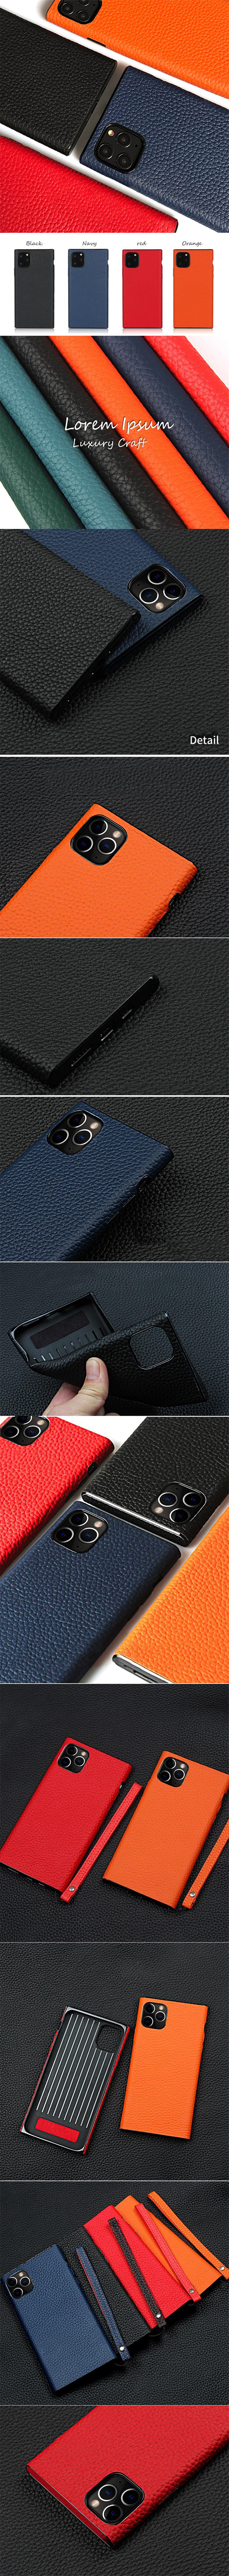 535-Apple-荔枝紋真皮貼殼手機保護殼手機殼保護套背蓋